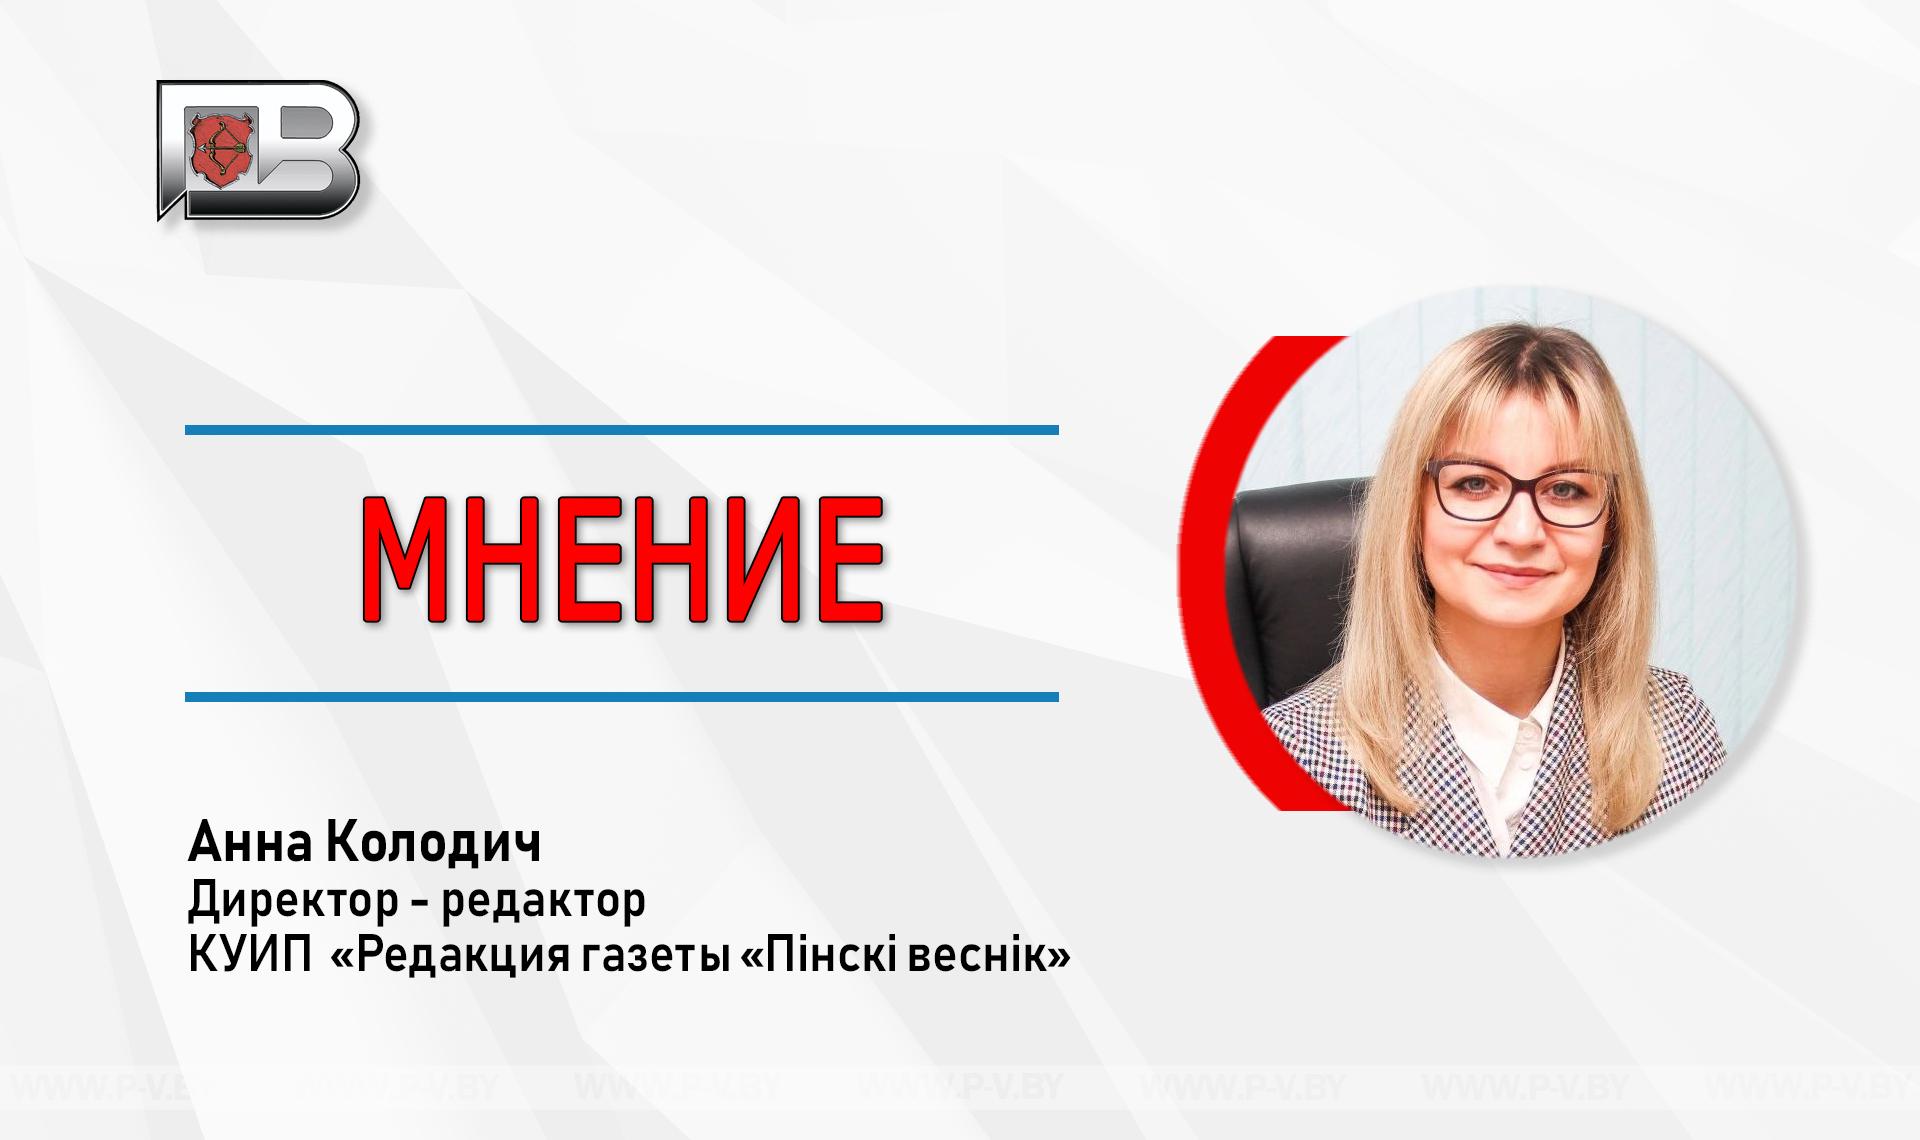 Анна Колодич: «По сути, региональная пресса находится на пути реформирования и преобразования»